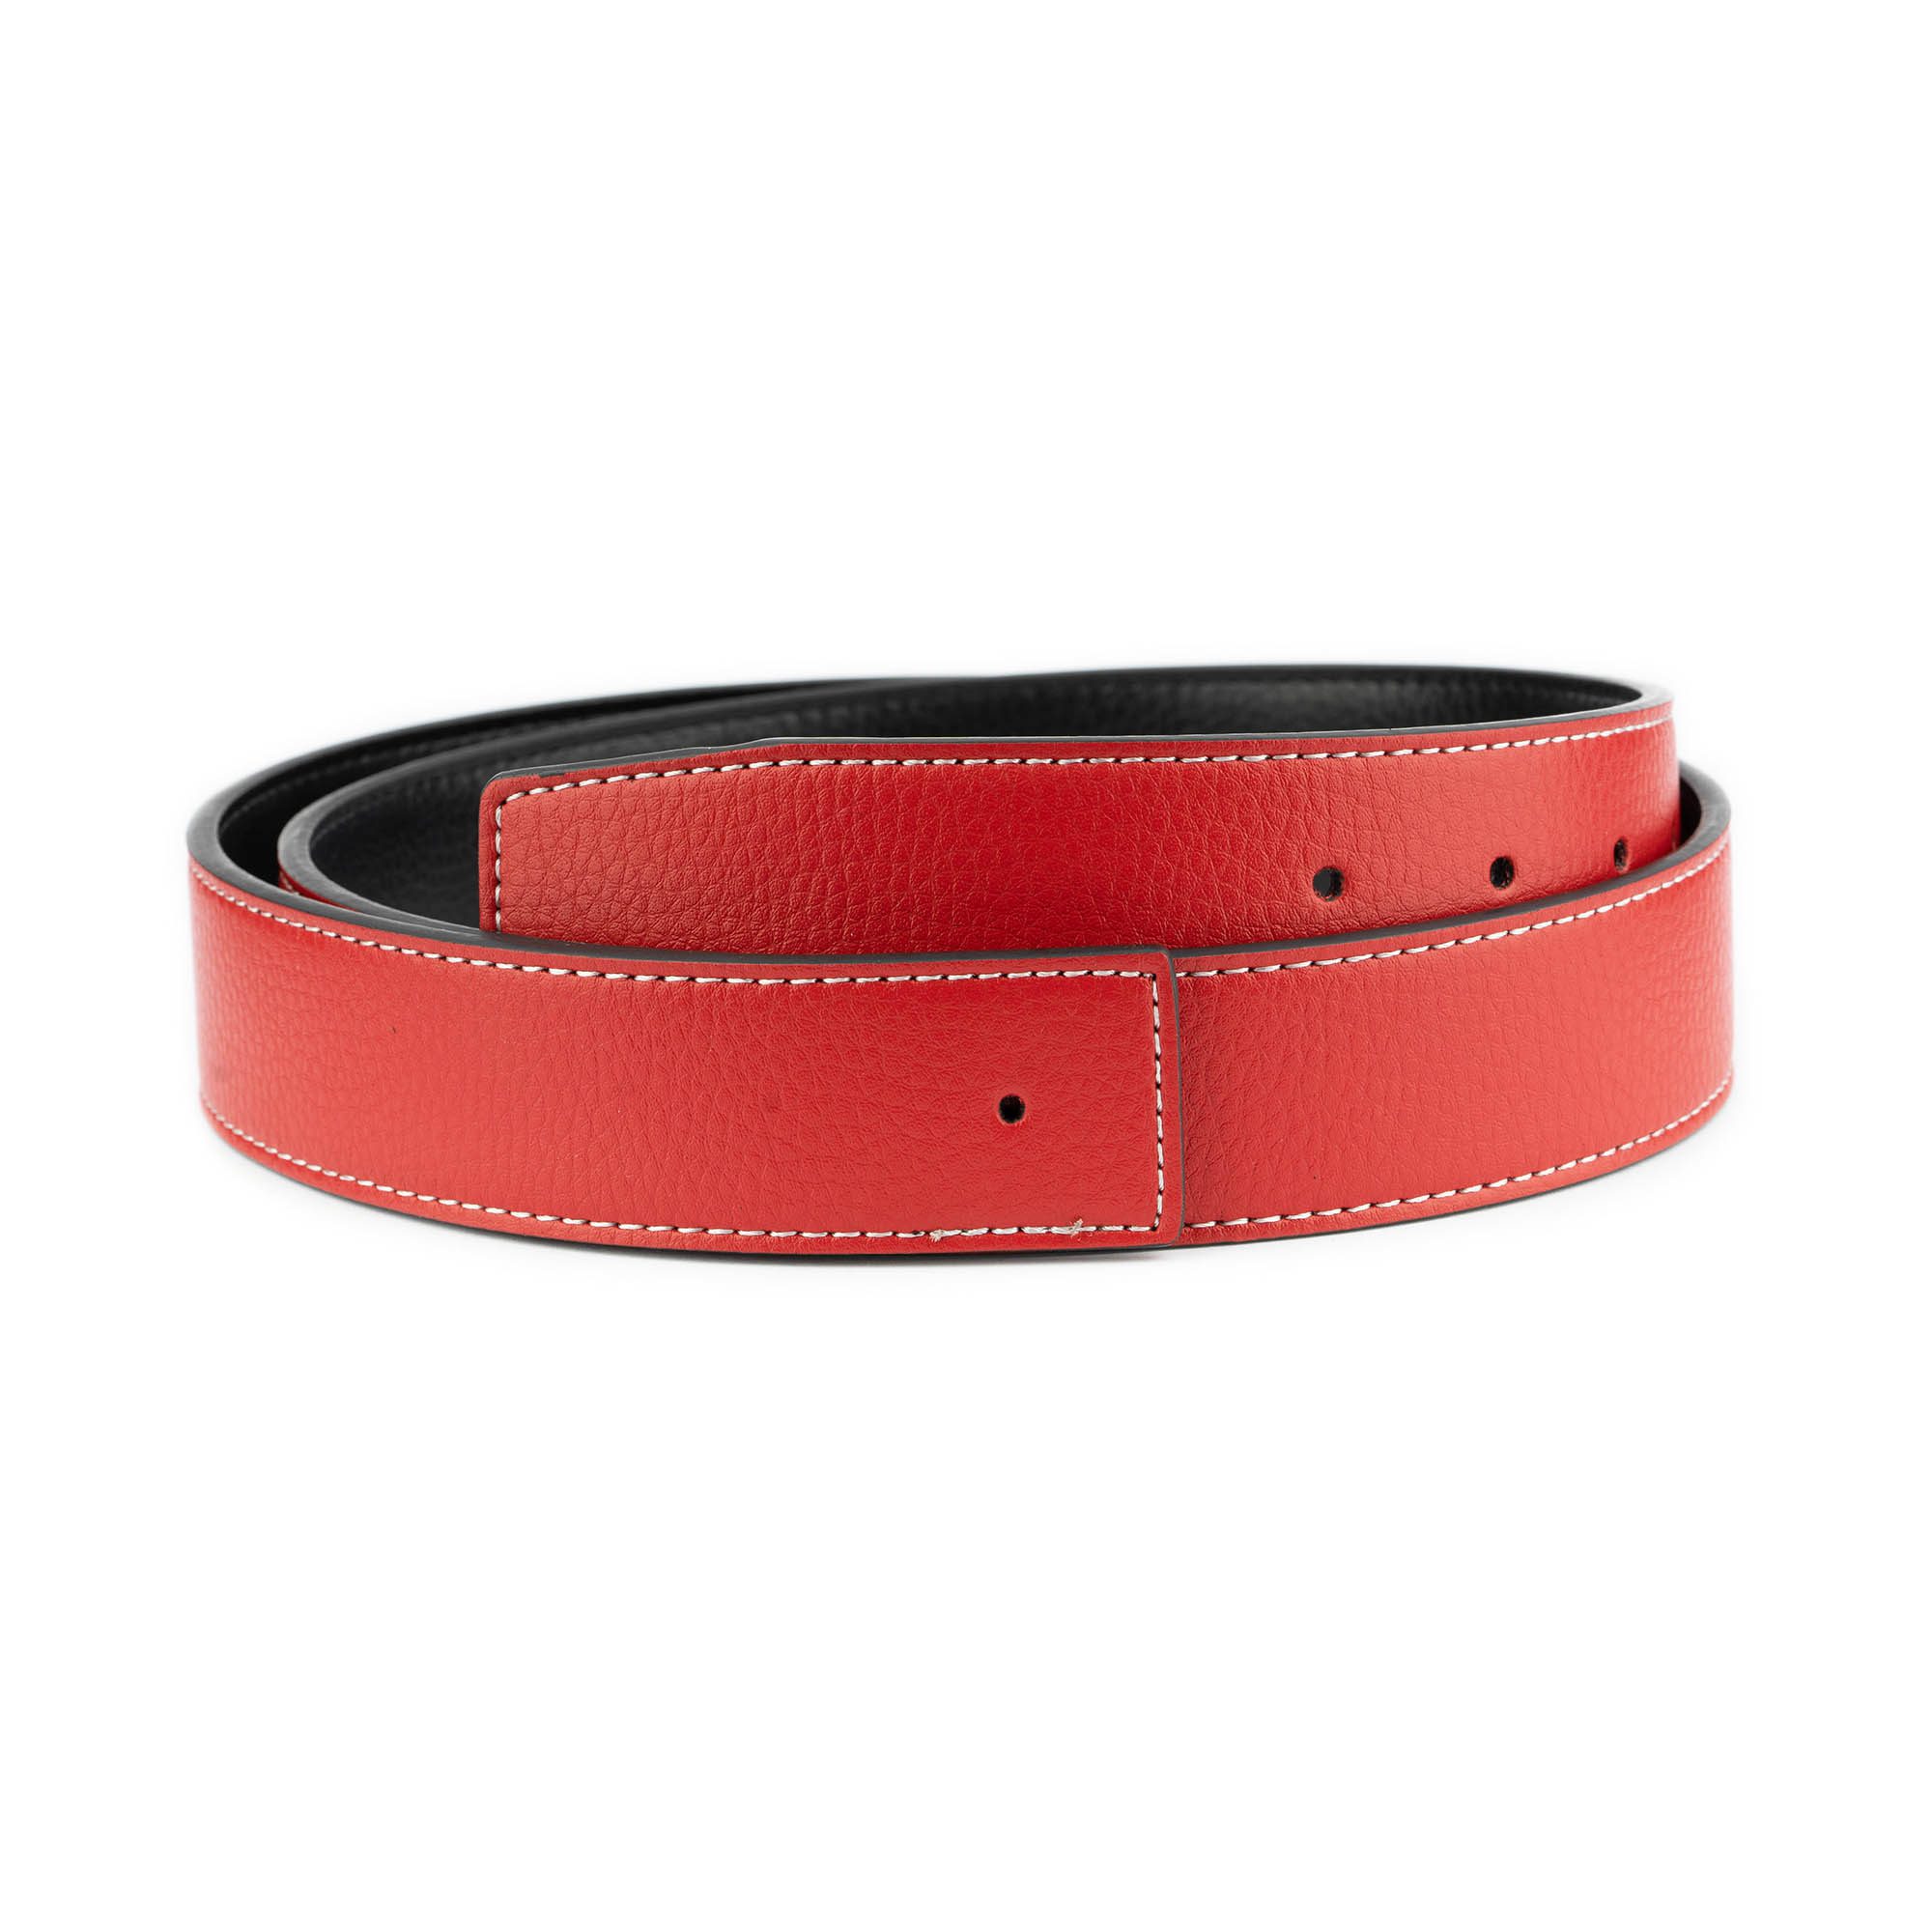 Hermes belts original leather black with red stitches  Leather belts men,  Black leather belt, Mens designer belts